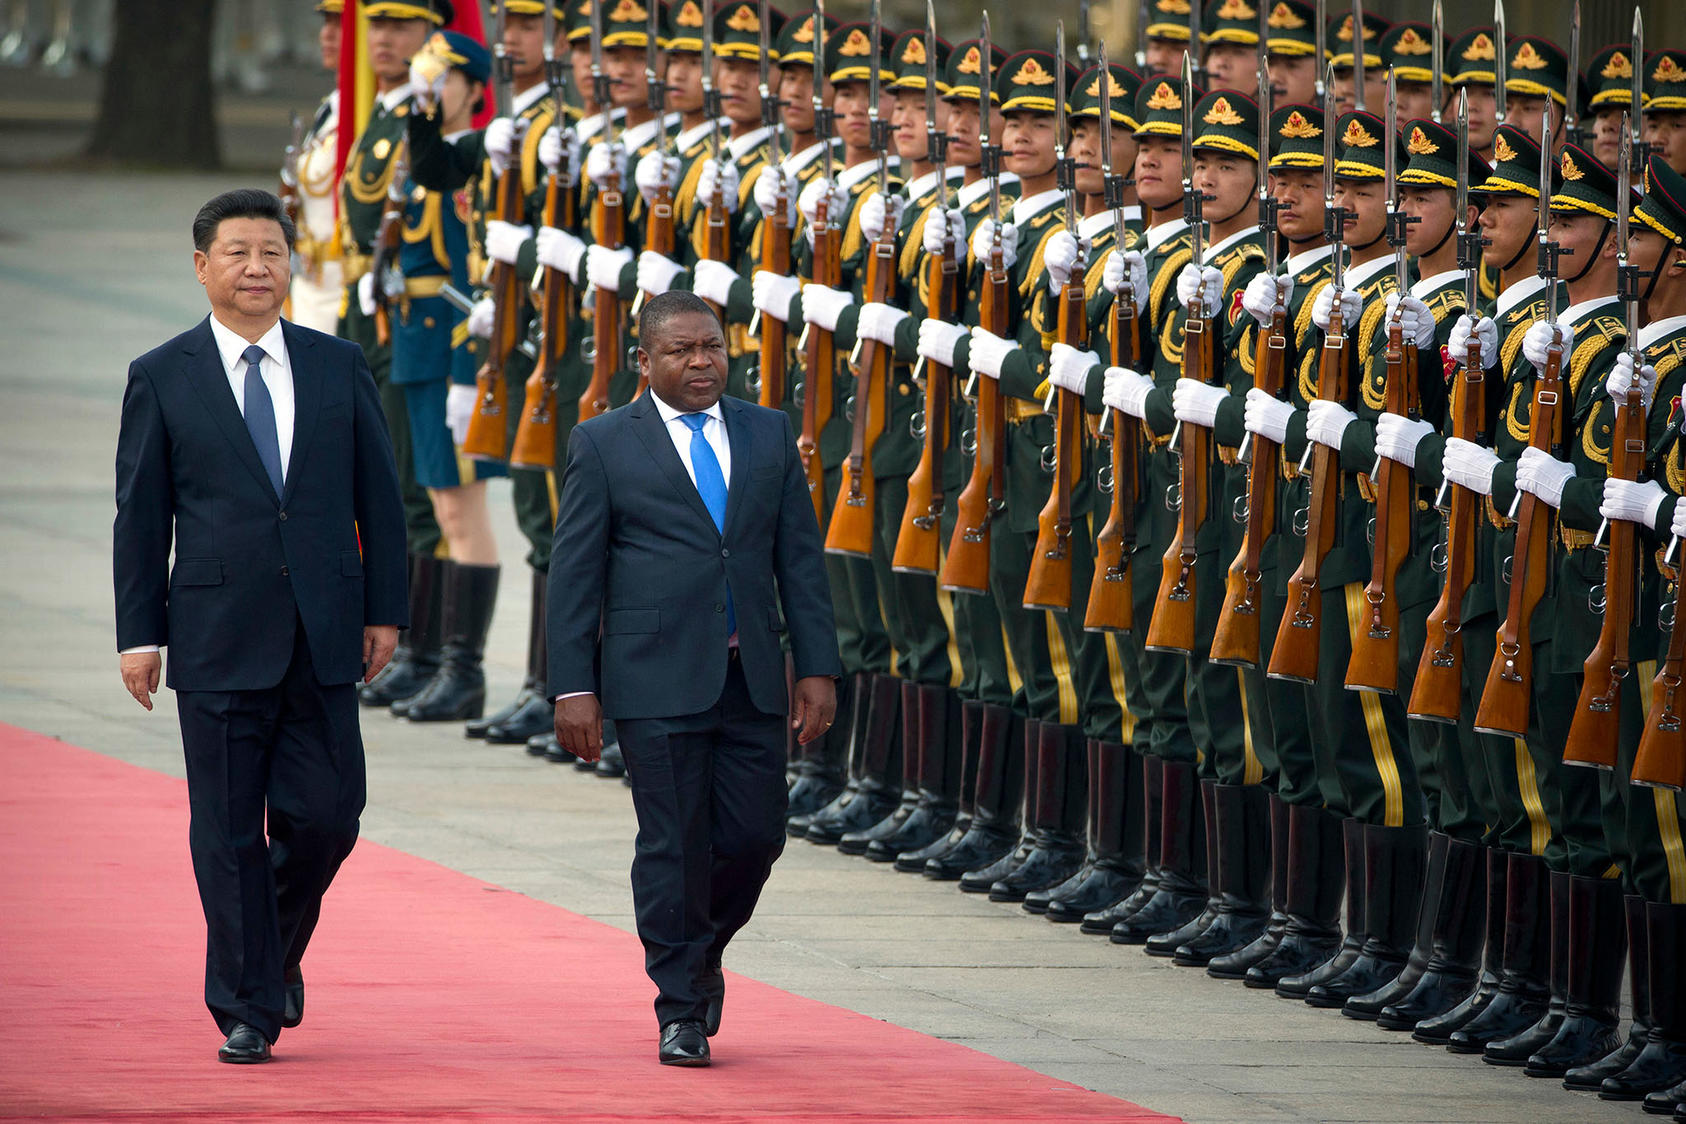 China "duwde" Rusland uit de Afrikaanse wapenmarkt